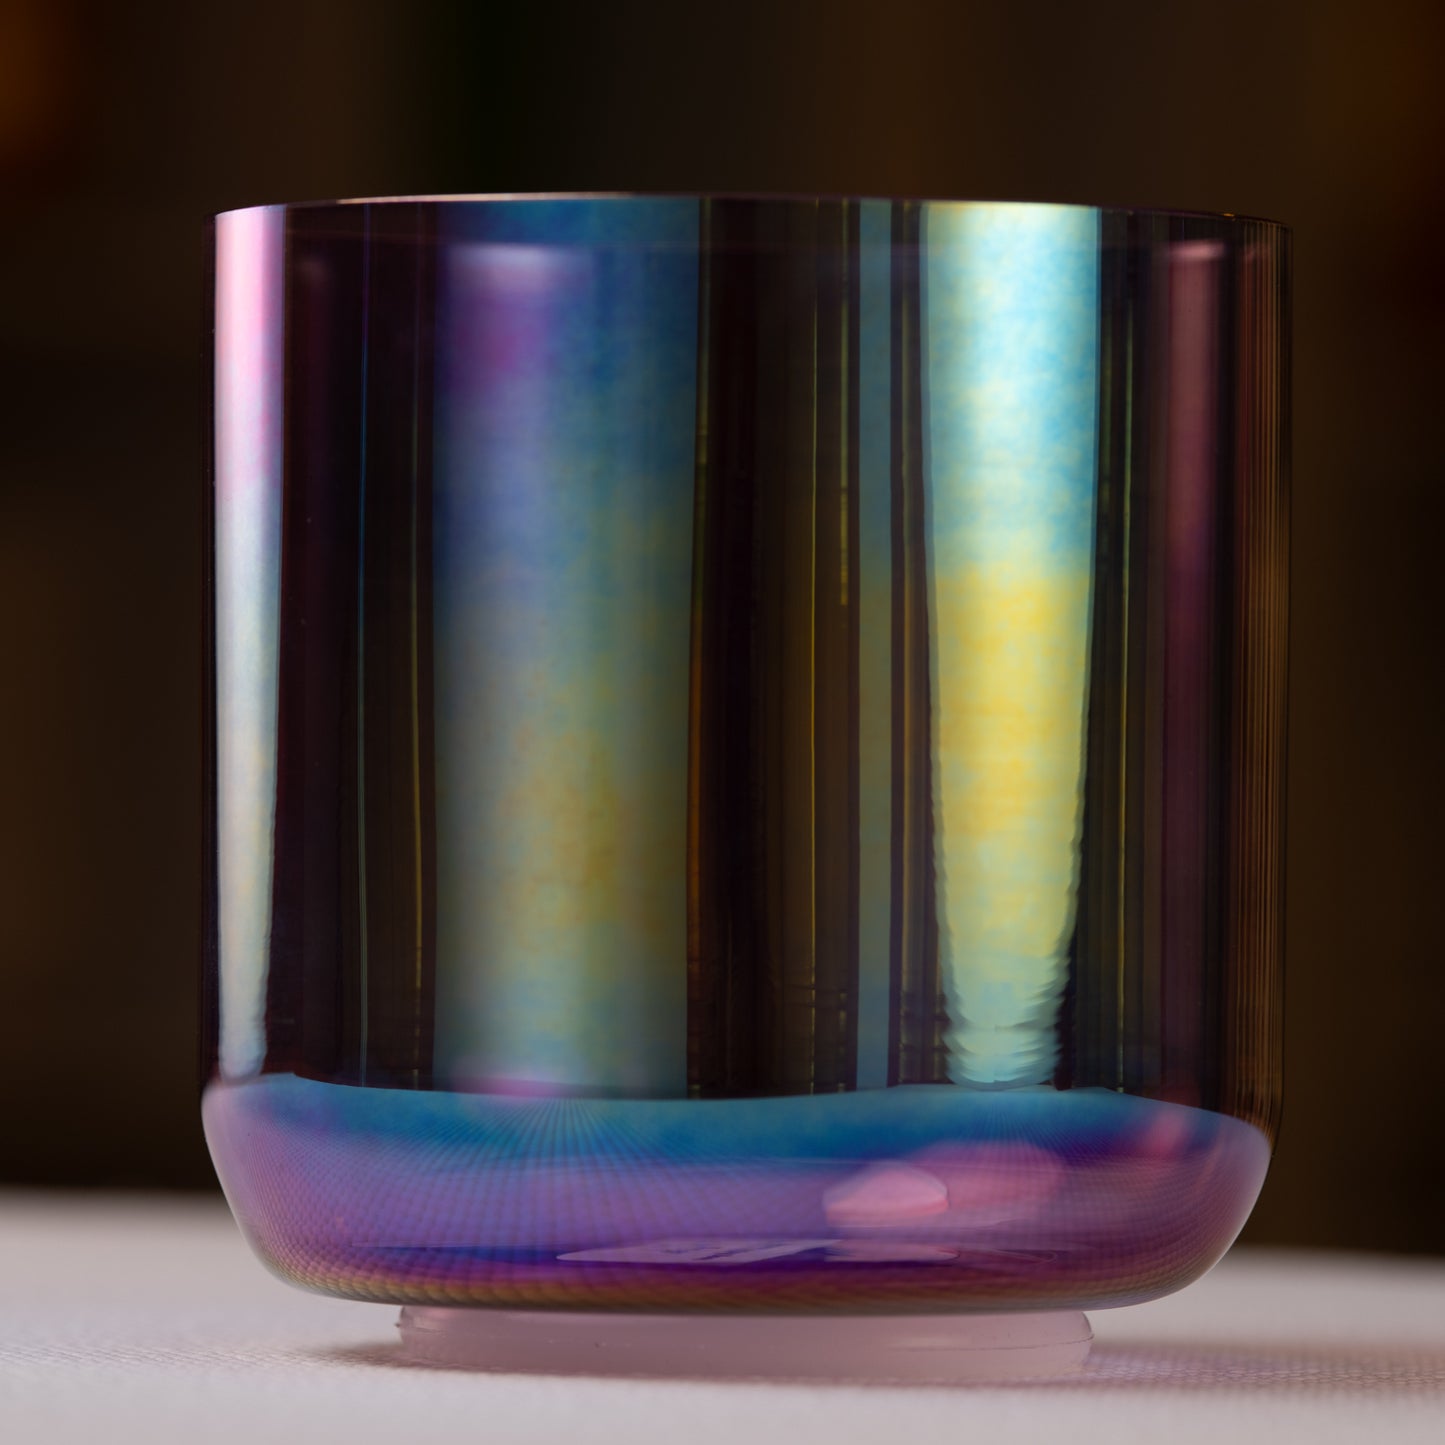 5.5" B-37 Amethyst Color Crystal Singing Bowl, Prismatic, Sacred Singing Bowls